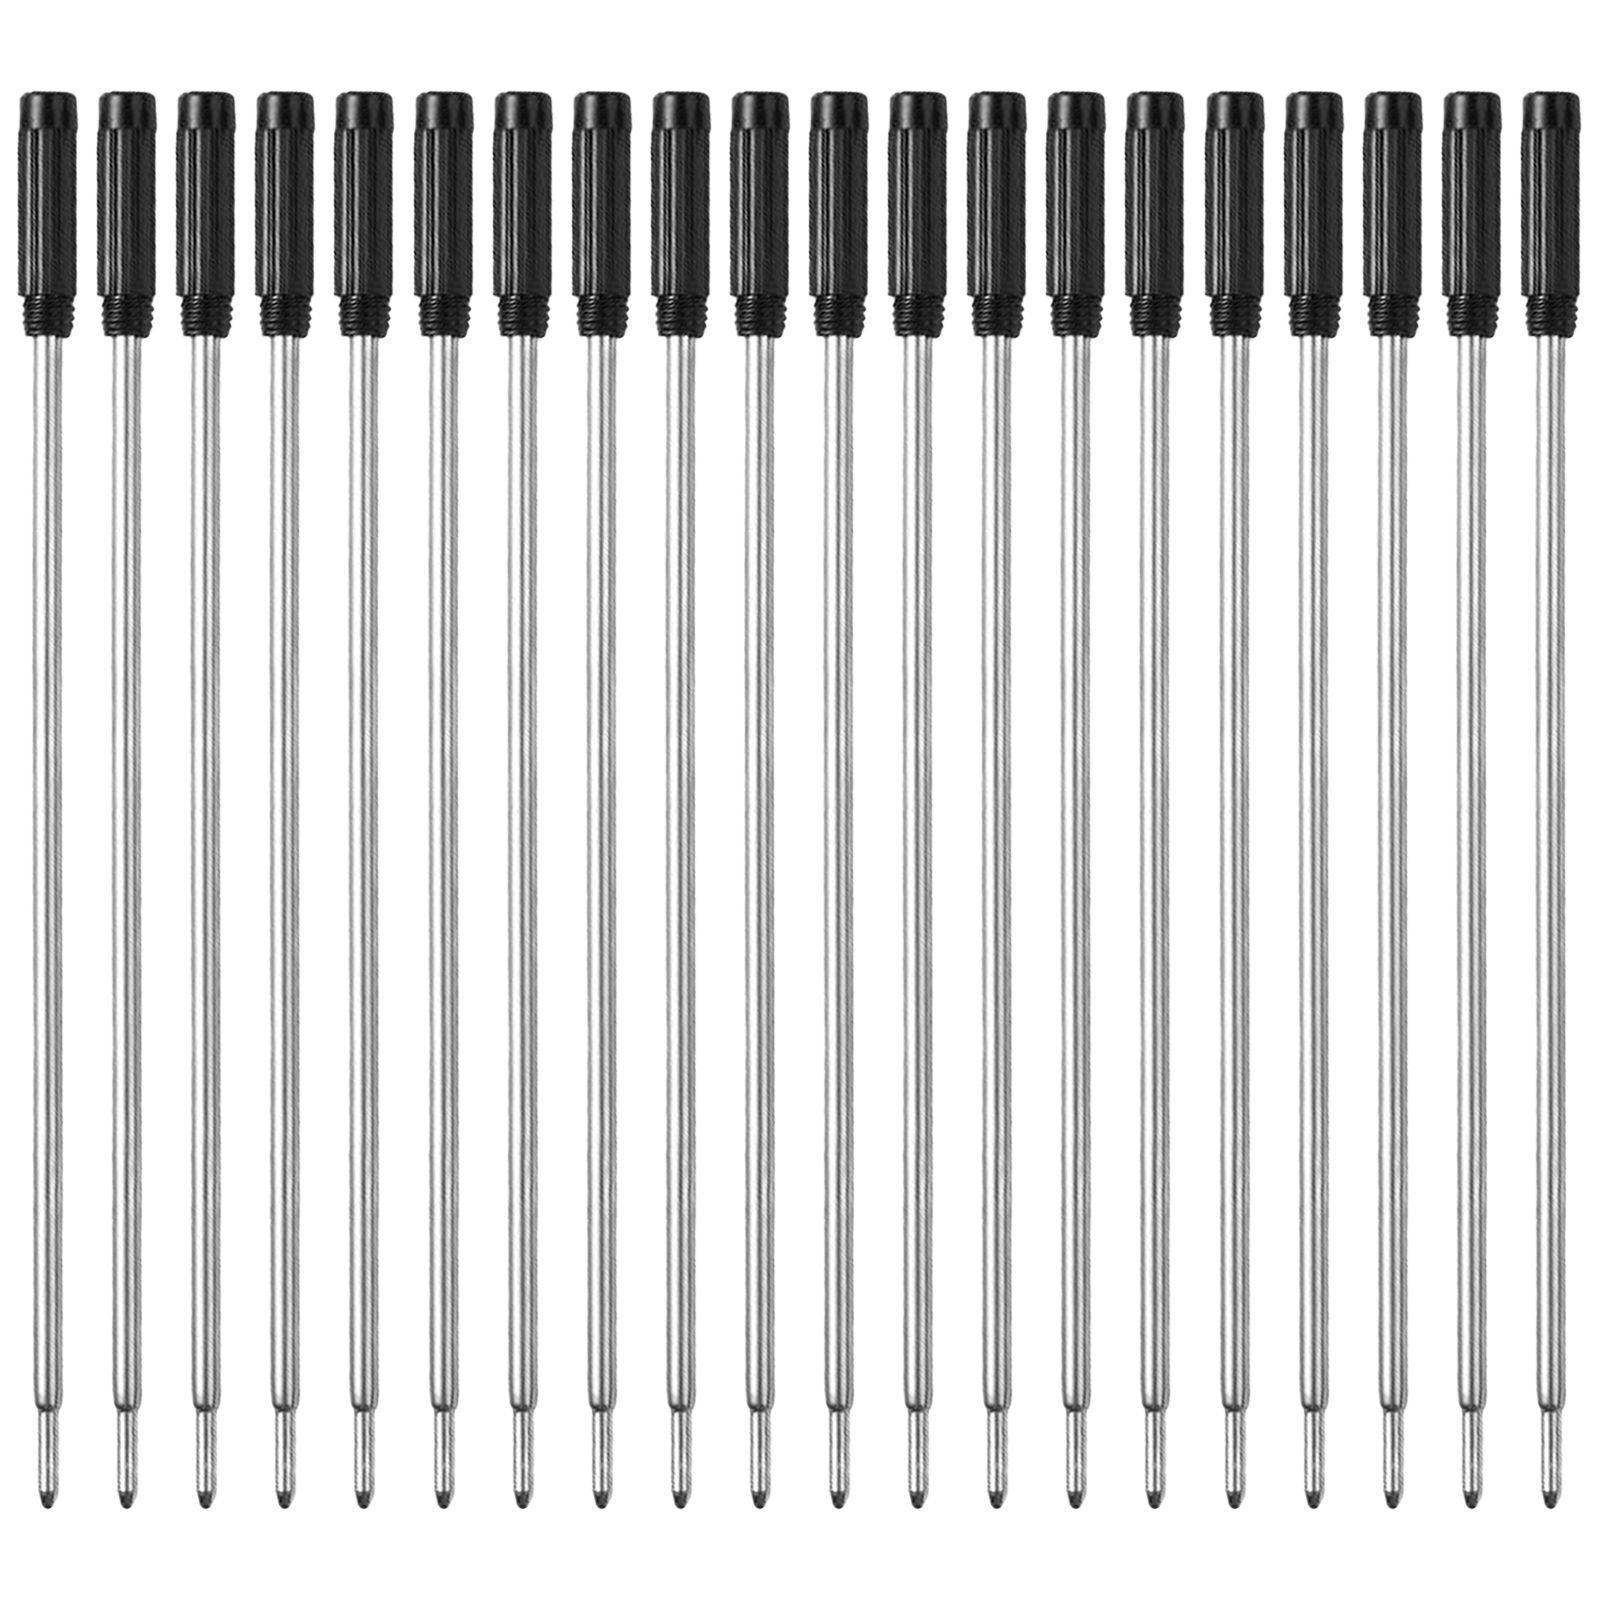 L:4.5 In Ballpoint Pen Refills for Medium Point,Cross Pens,Black Ink,Pack of 20